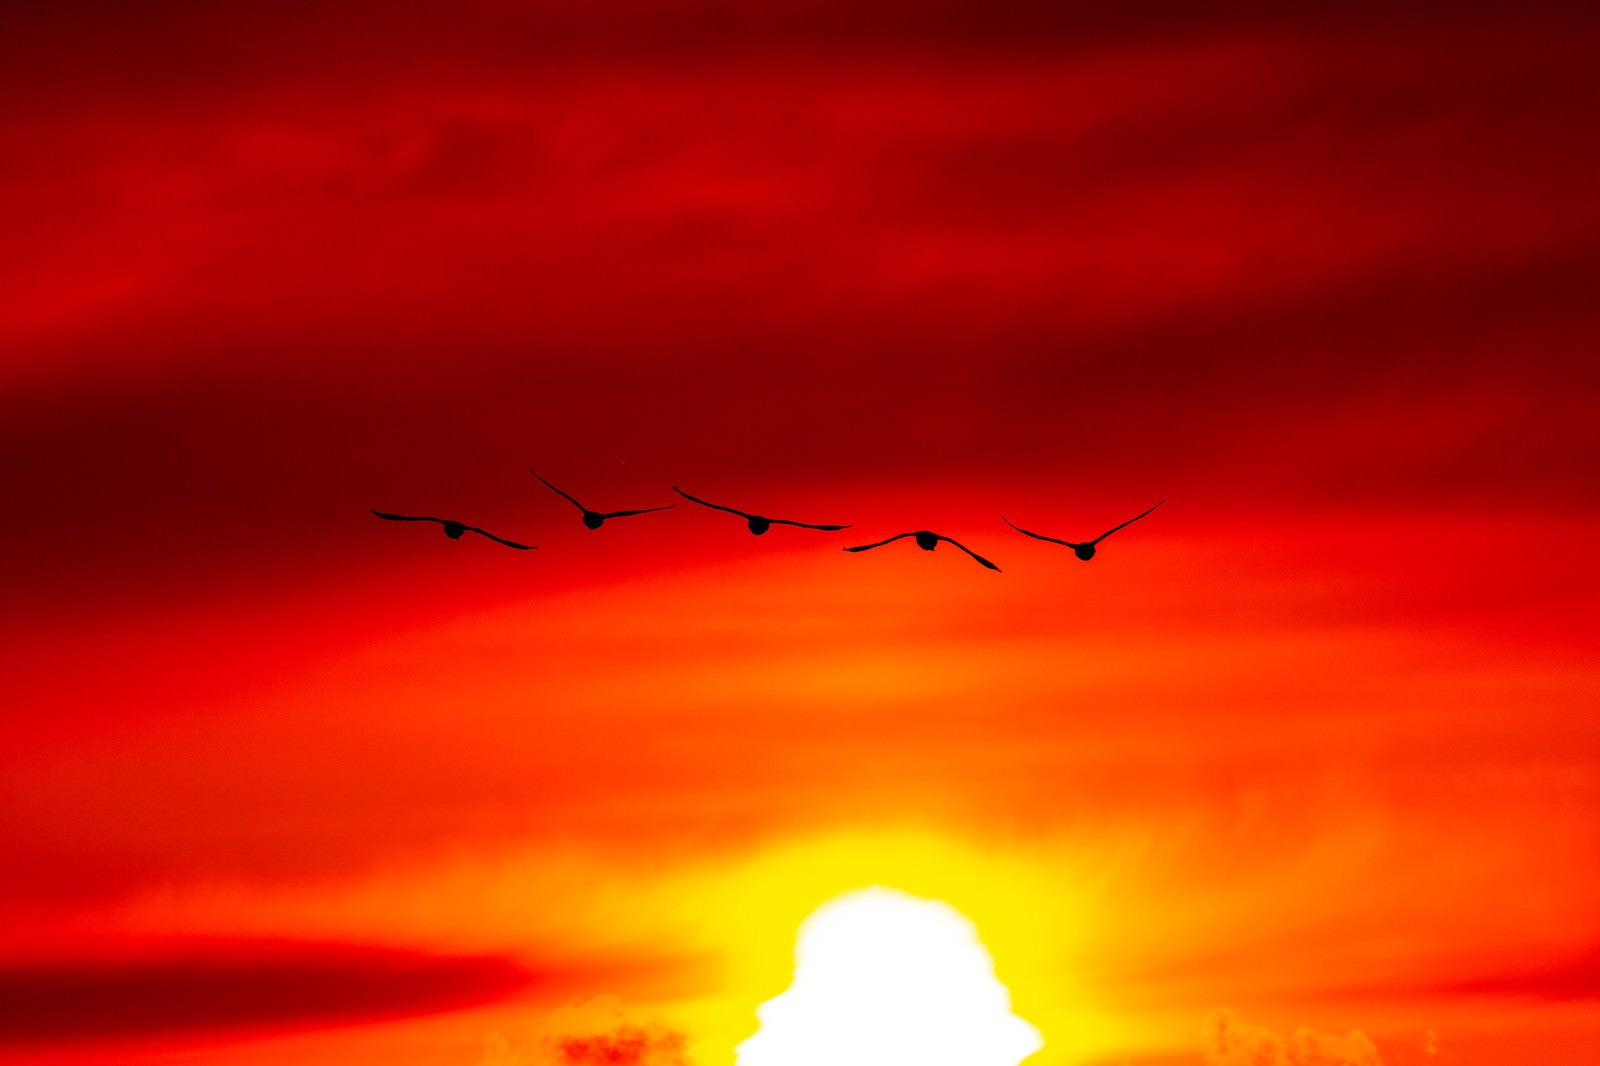 「夕陽に向かい飛ぶ白鳥」の写真